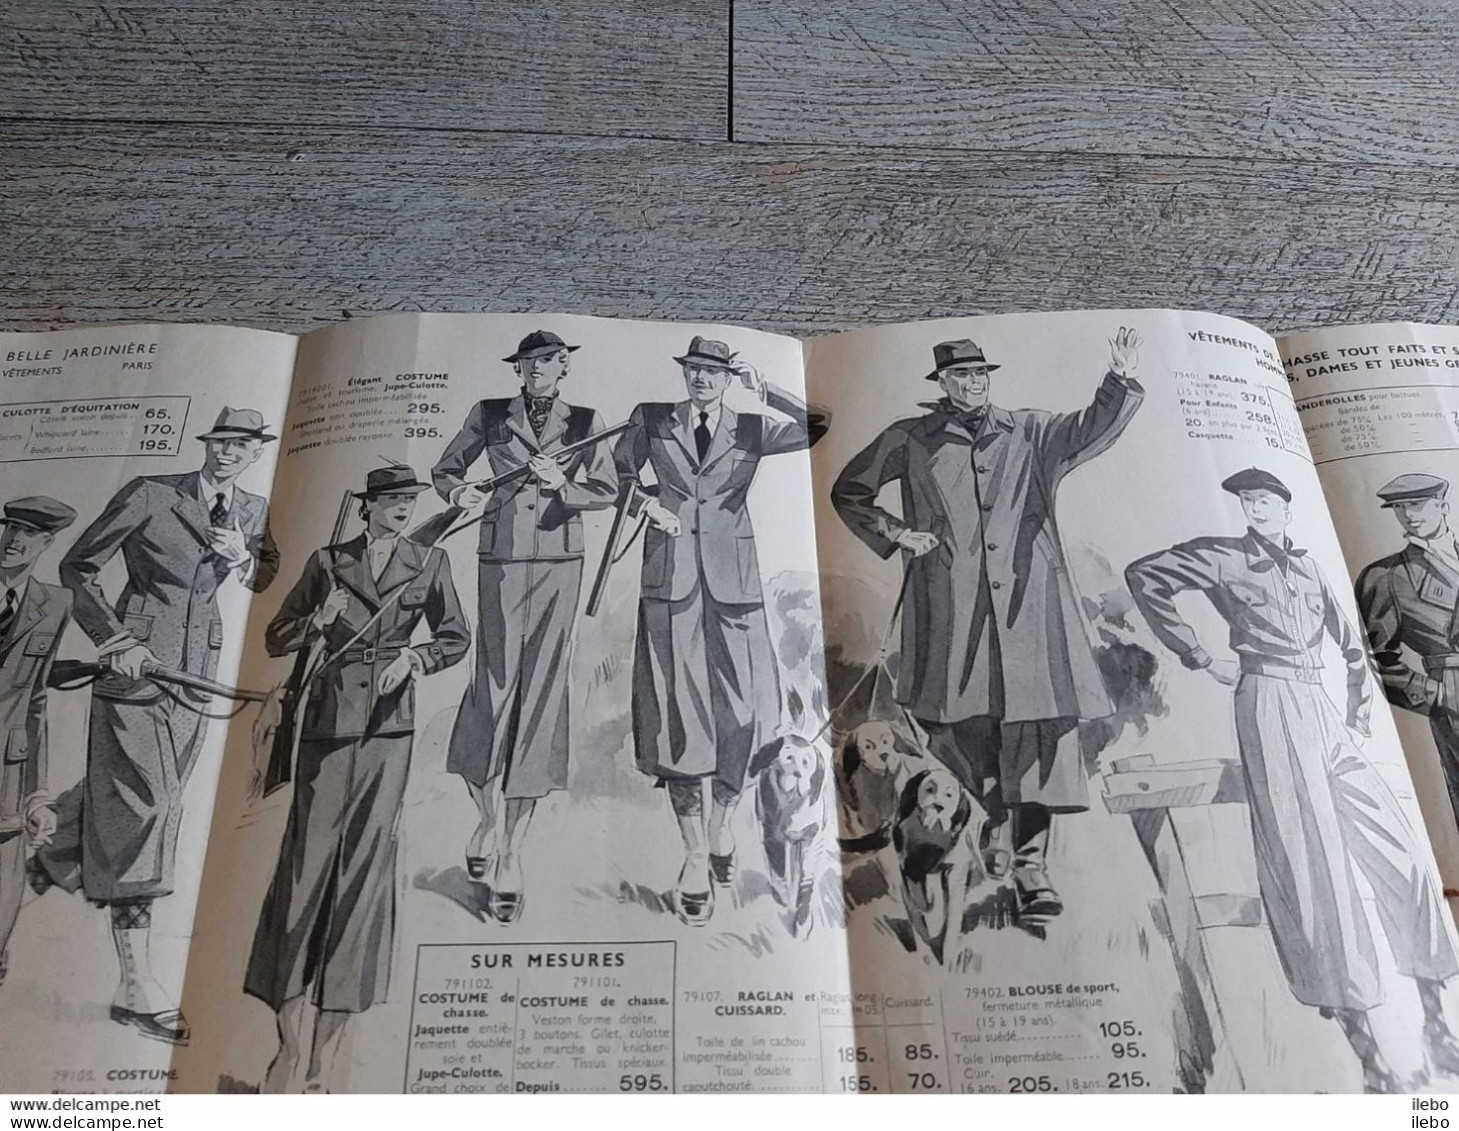 Petit Catalogue Belle Jardinière Vêtements Acessoires Pour Chasse Et Pêche 1936 Paris Mode Homme Femme - Caza/Pezca